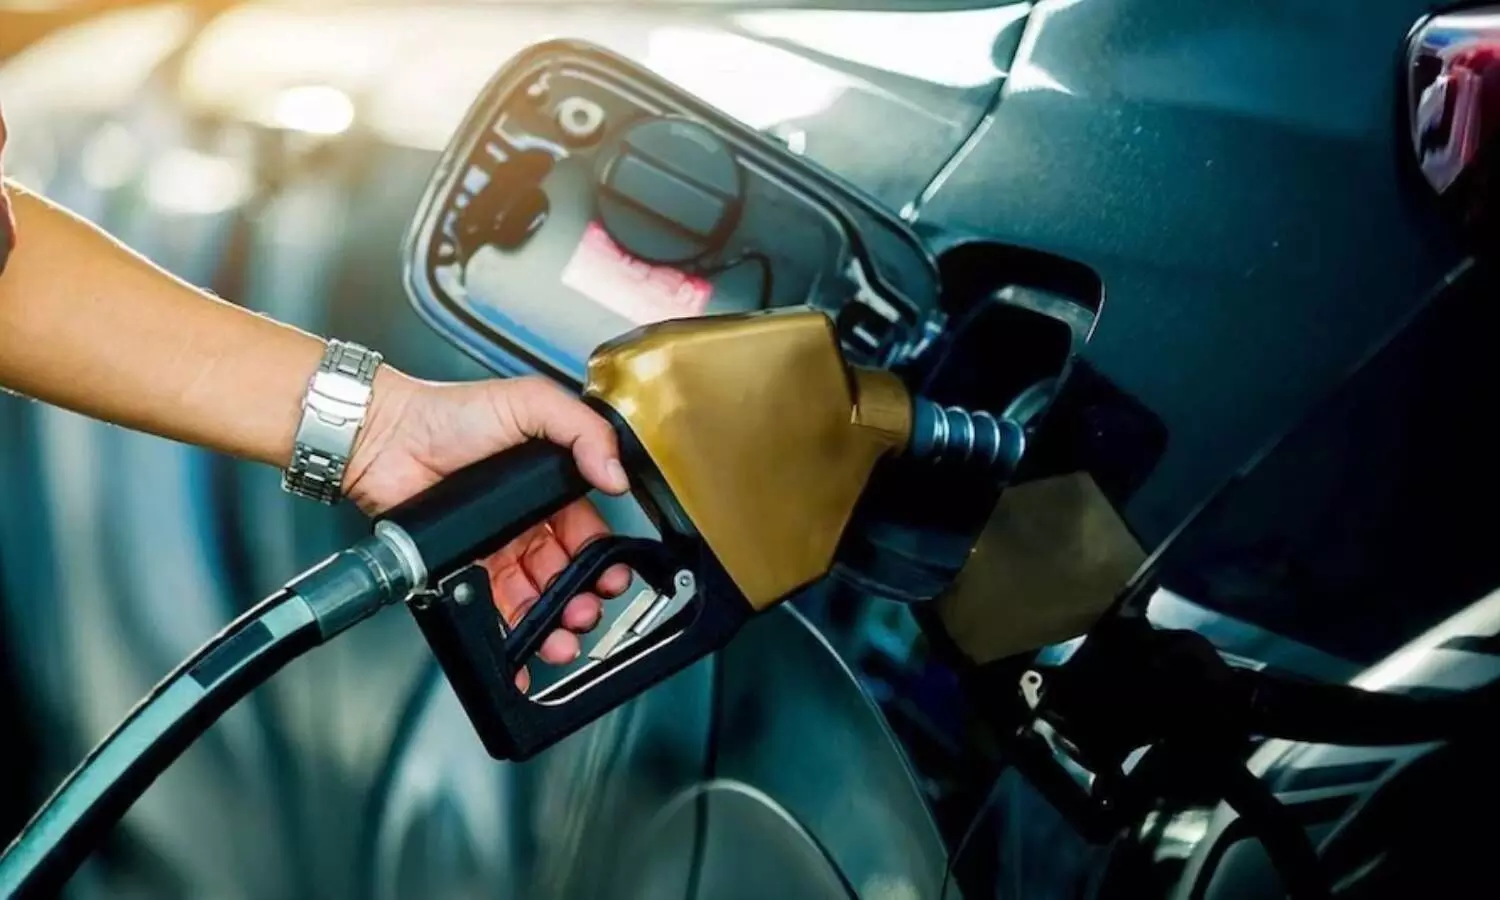 UP Petrol Diesel Price Today: यूपी वालों को मिली रही पेट्रोल डीजल से राहत, जानिए अब आपके शहर में क्या हैं भाव